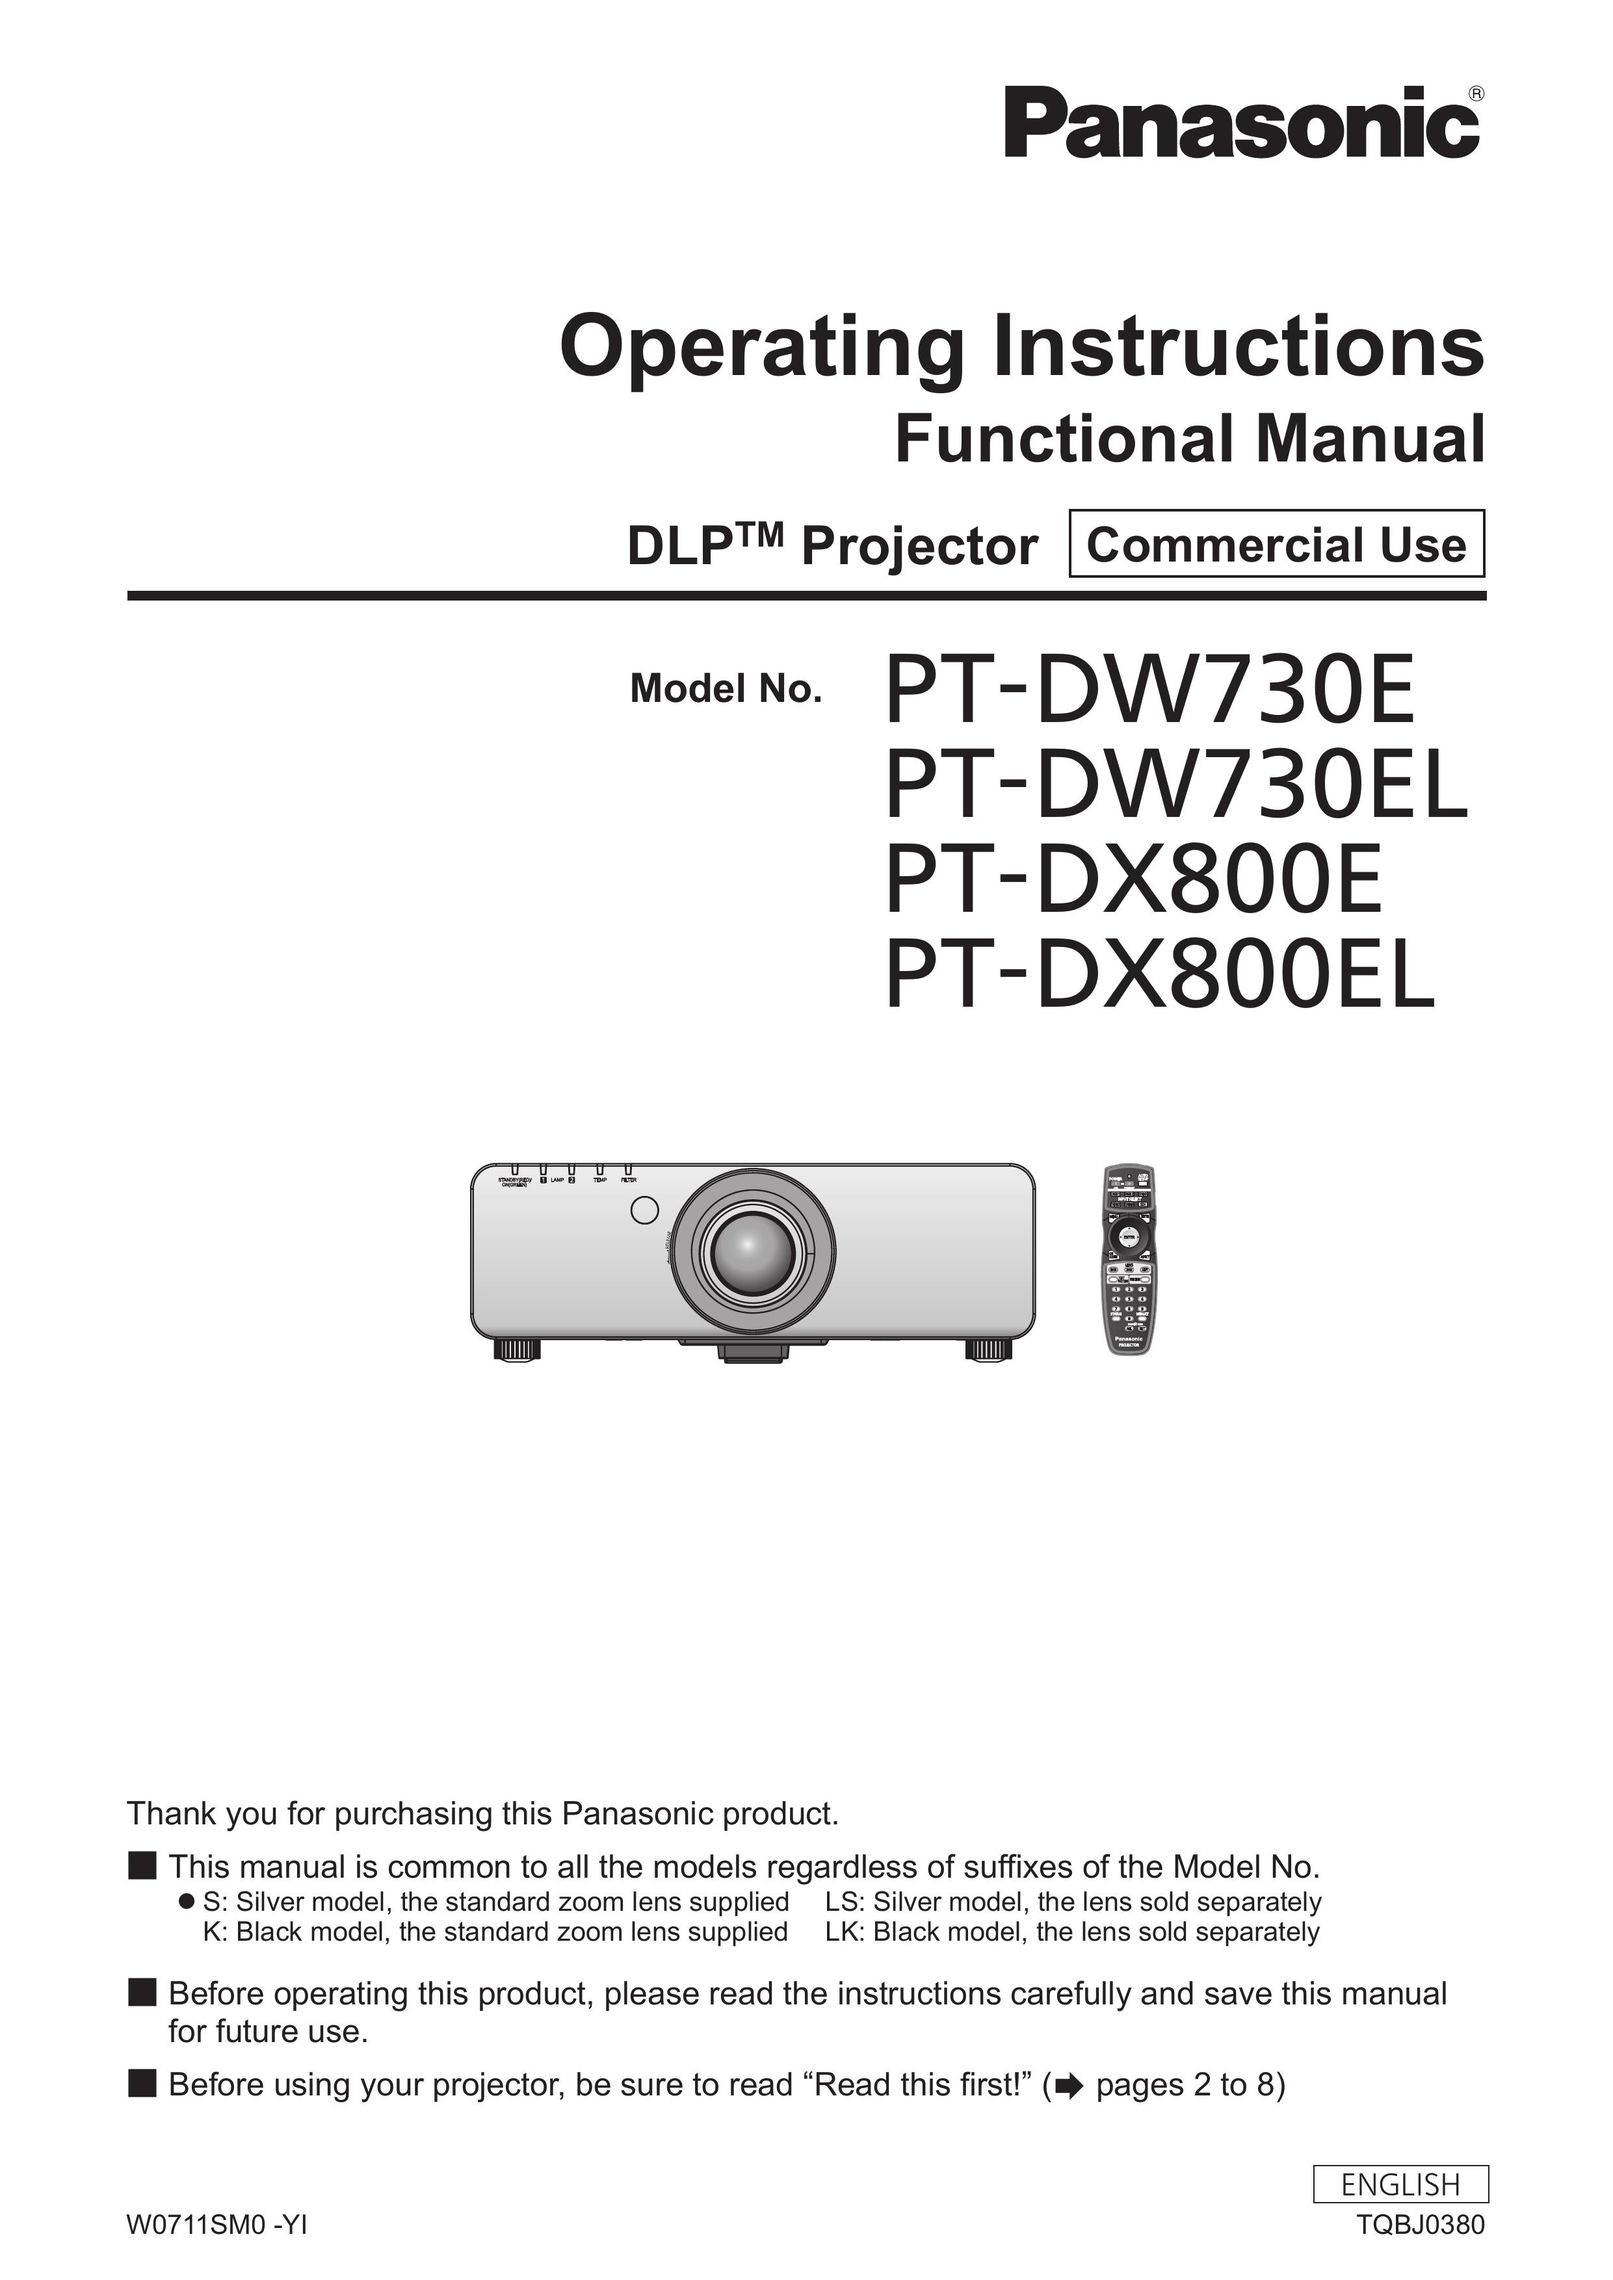 Panasonic PT-DW730EL Projector Accessories User Manual